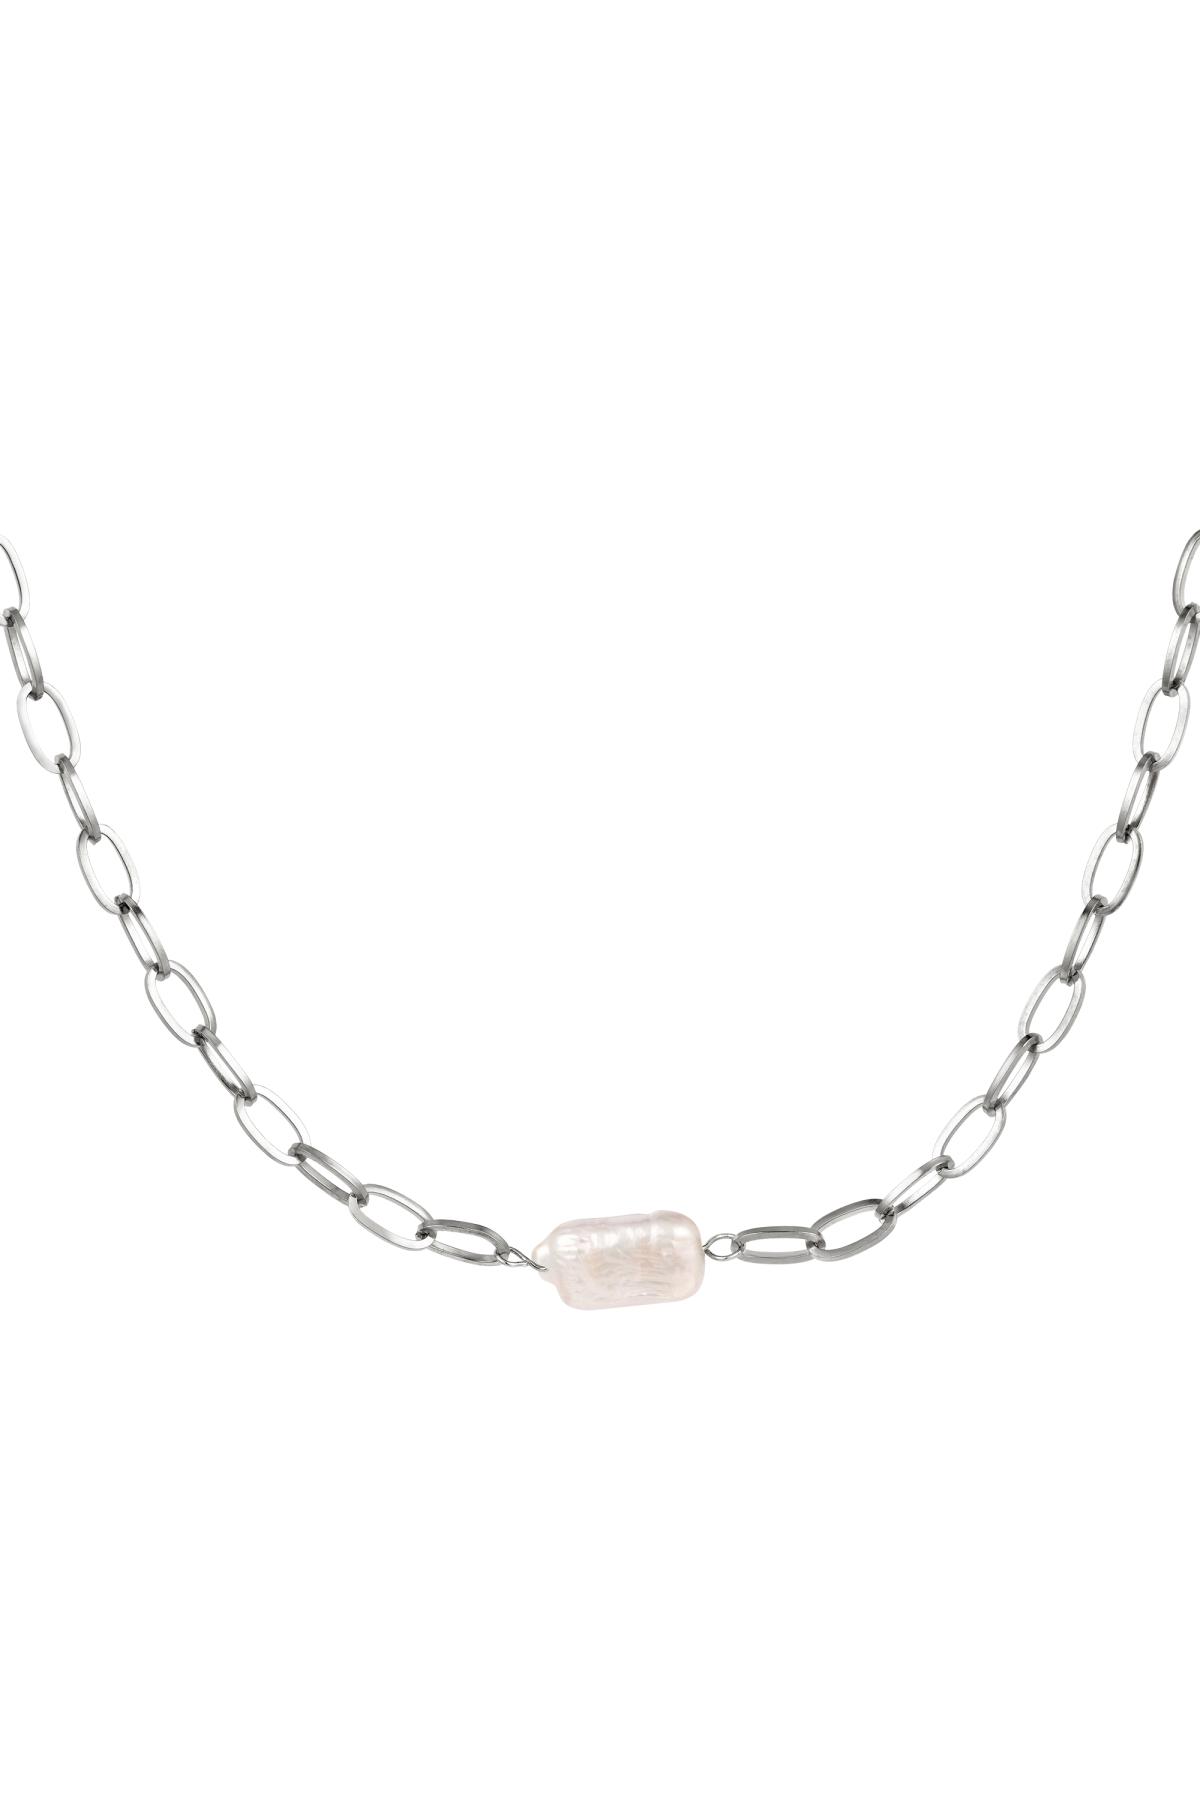 Halskette kleine Kette mit einer Perle Silber Edelstahl